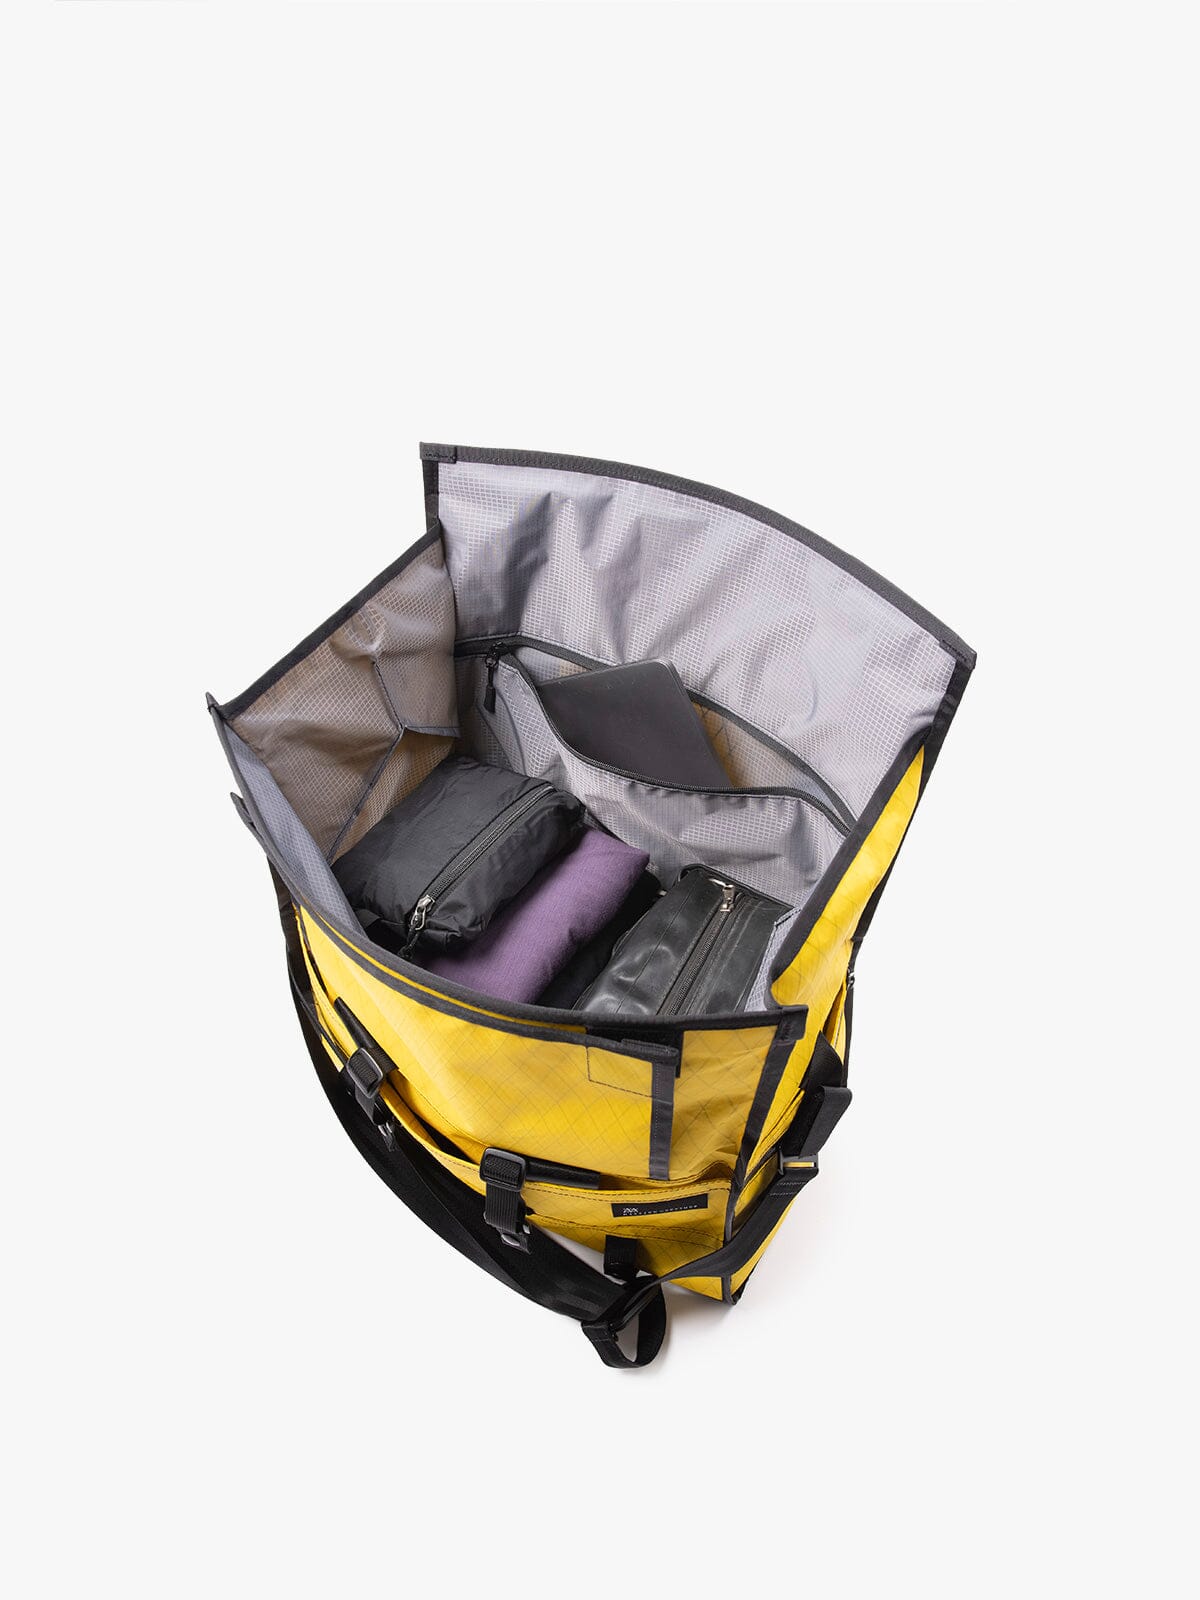 Helmsman : VX by Mission Workshop - Wetterfeste Taschen und technische Bekleidung - San Francisco & Los Angeles - Für die Ewigkeit gebaut - Garantiert